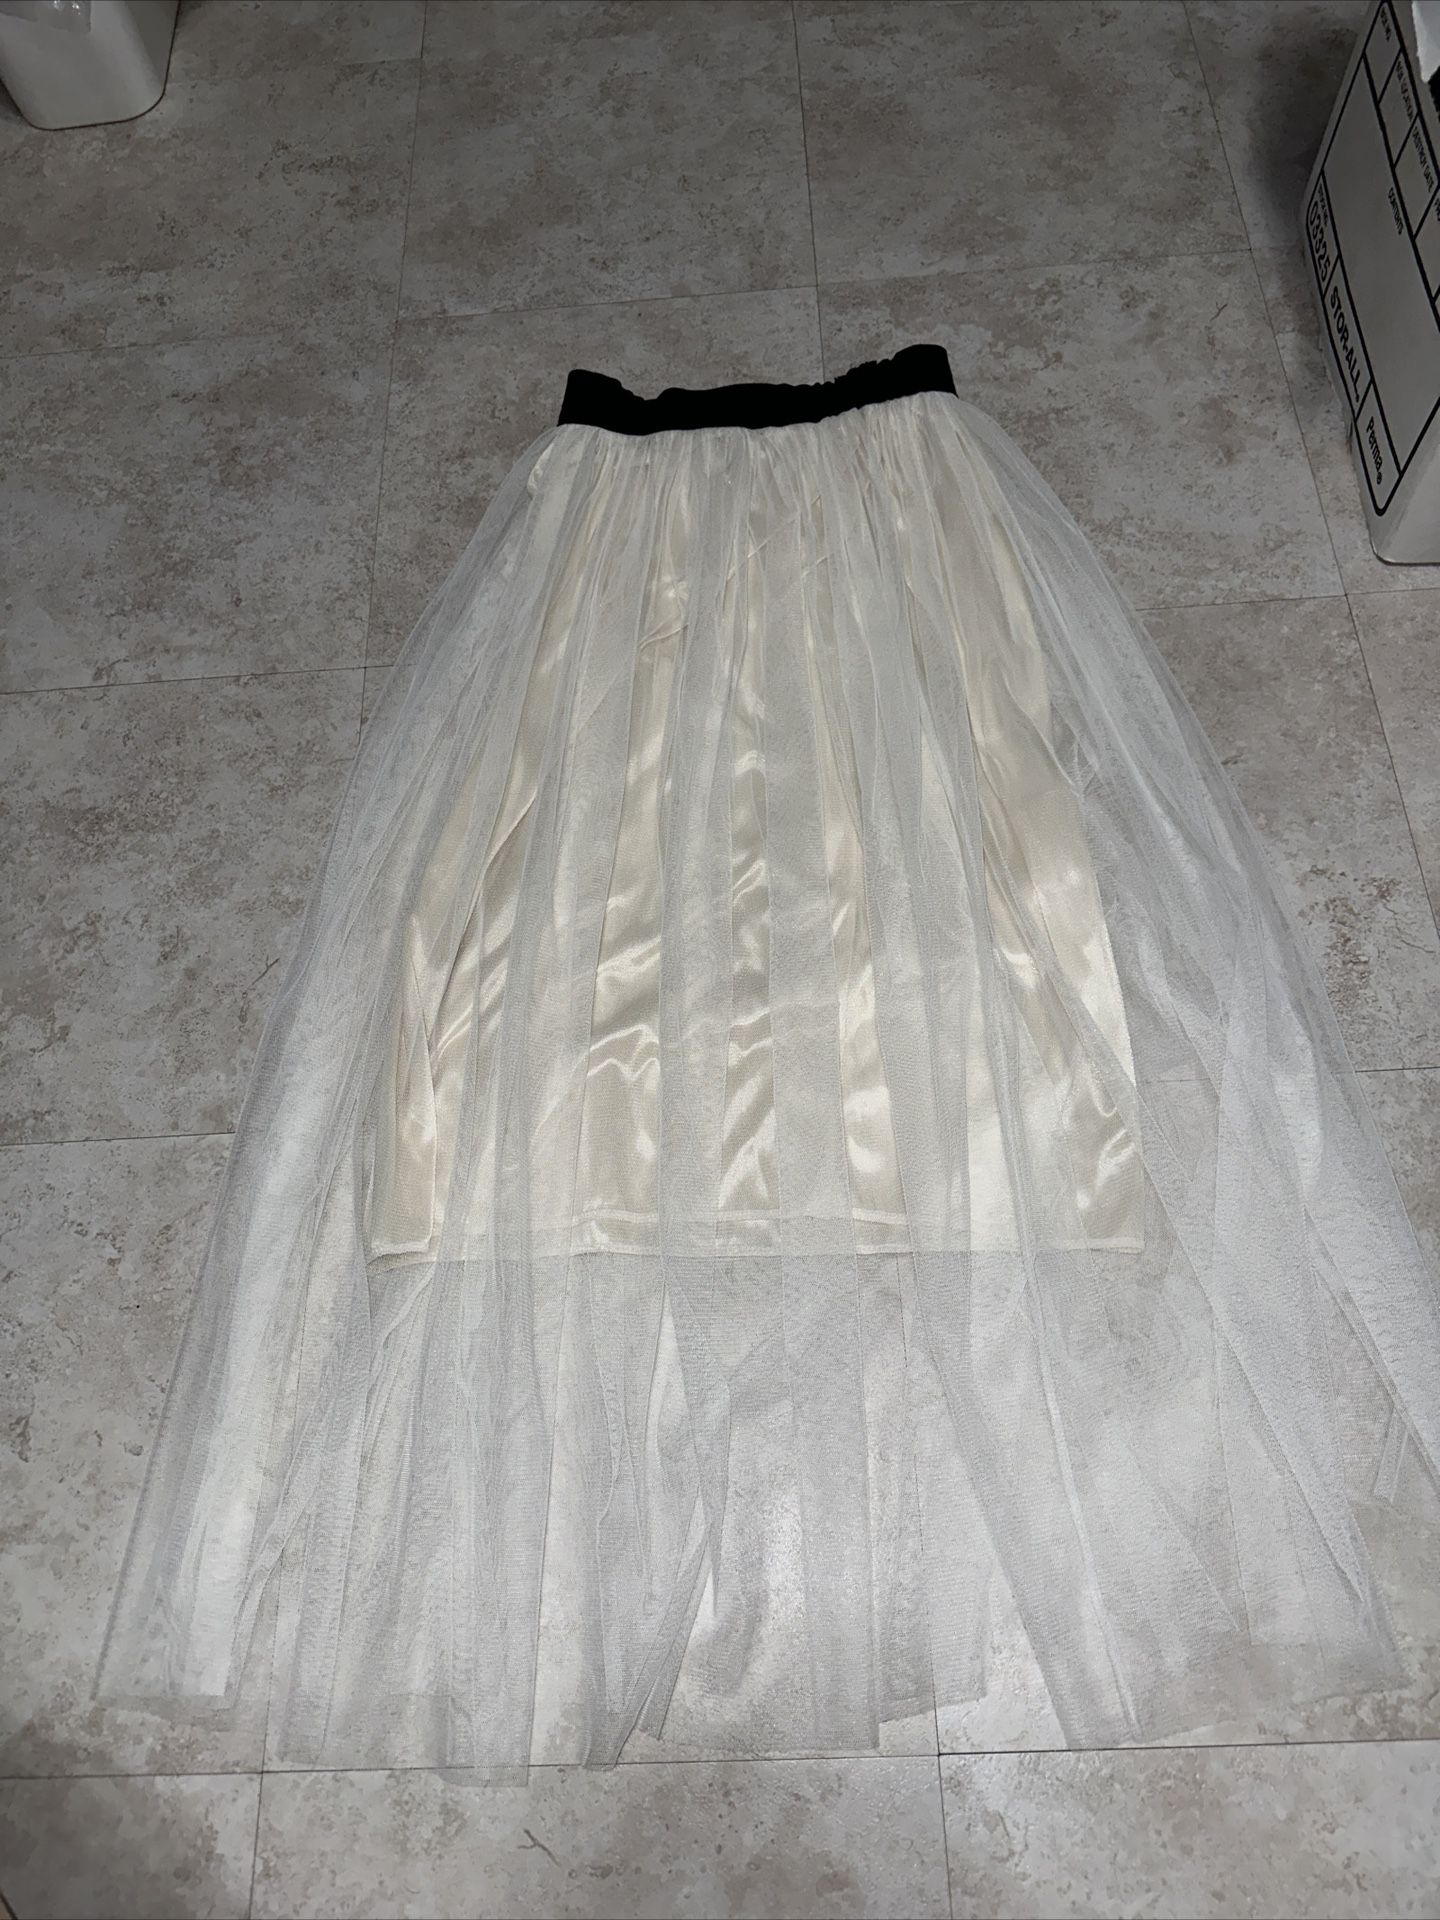 Cream Silky Skirt With Long Ballet Tulle White Sheer Layered Skirt One 